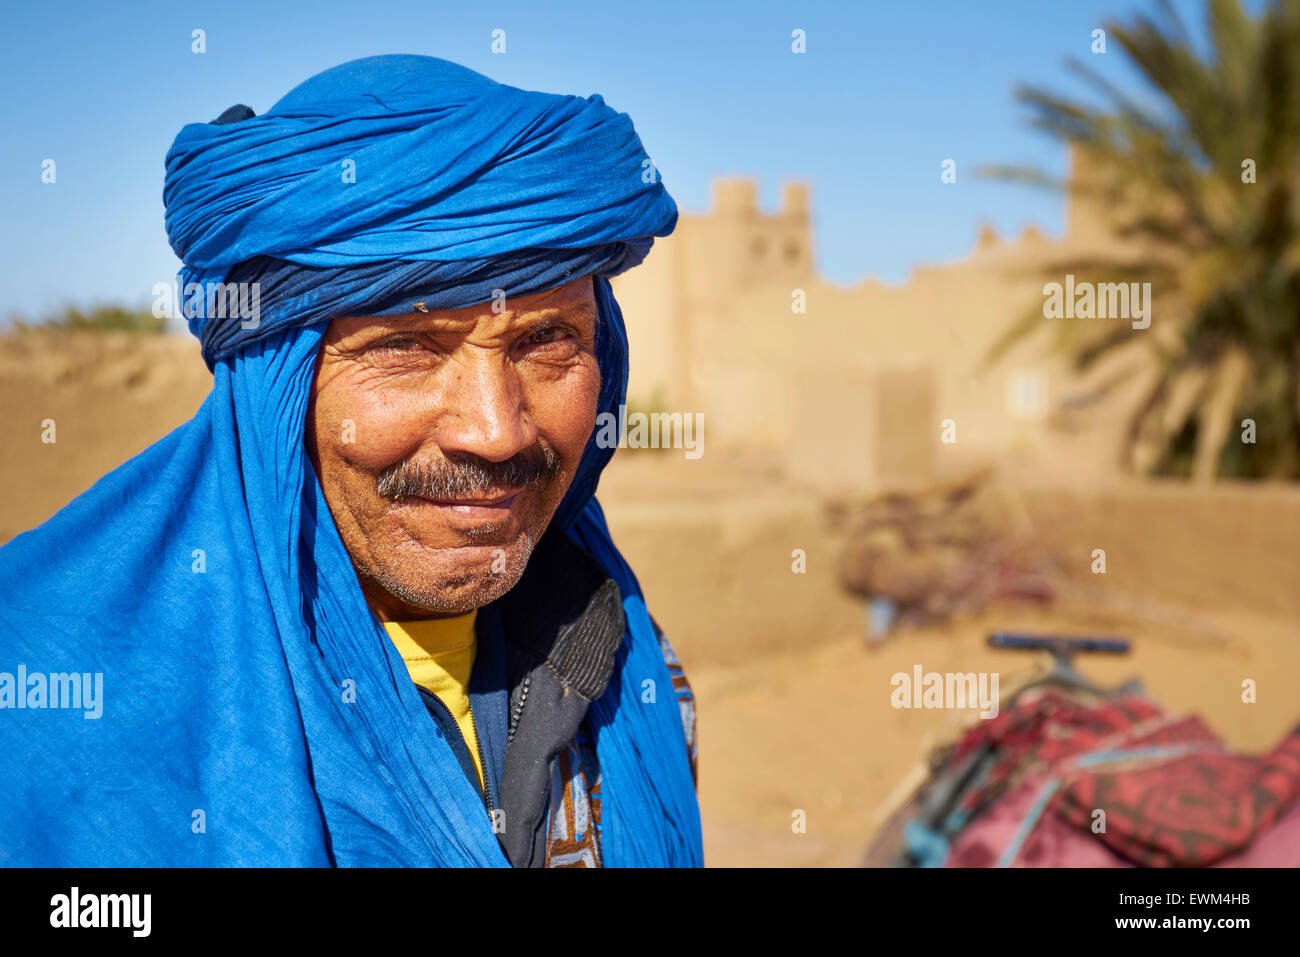 Hombre bereber con un turbante, retrato, Egr Chebbi, Sahara, Marruecos Foto de stock